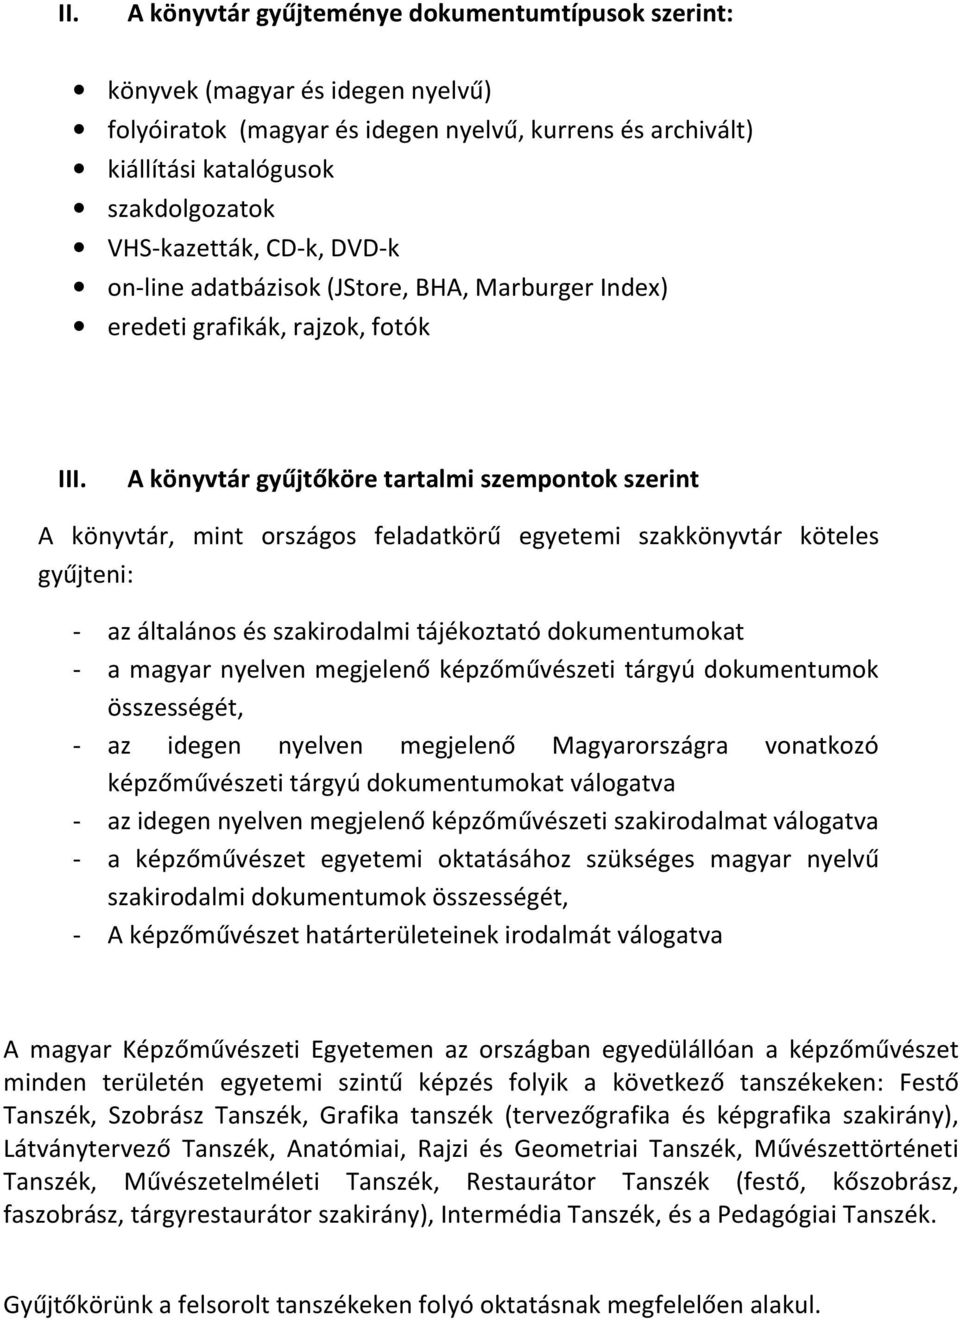 A könyvtár gyűjtőköre tartalmi szempontok szerint A könyvtár, mint országos feladatkörű egyetemi szakkönyvtár köteles gyűjteni: - az általános és szakirodalmi tájékoztató dokumentumokat - a magyar